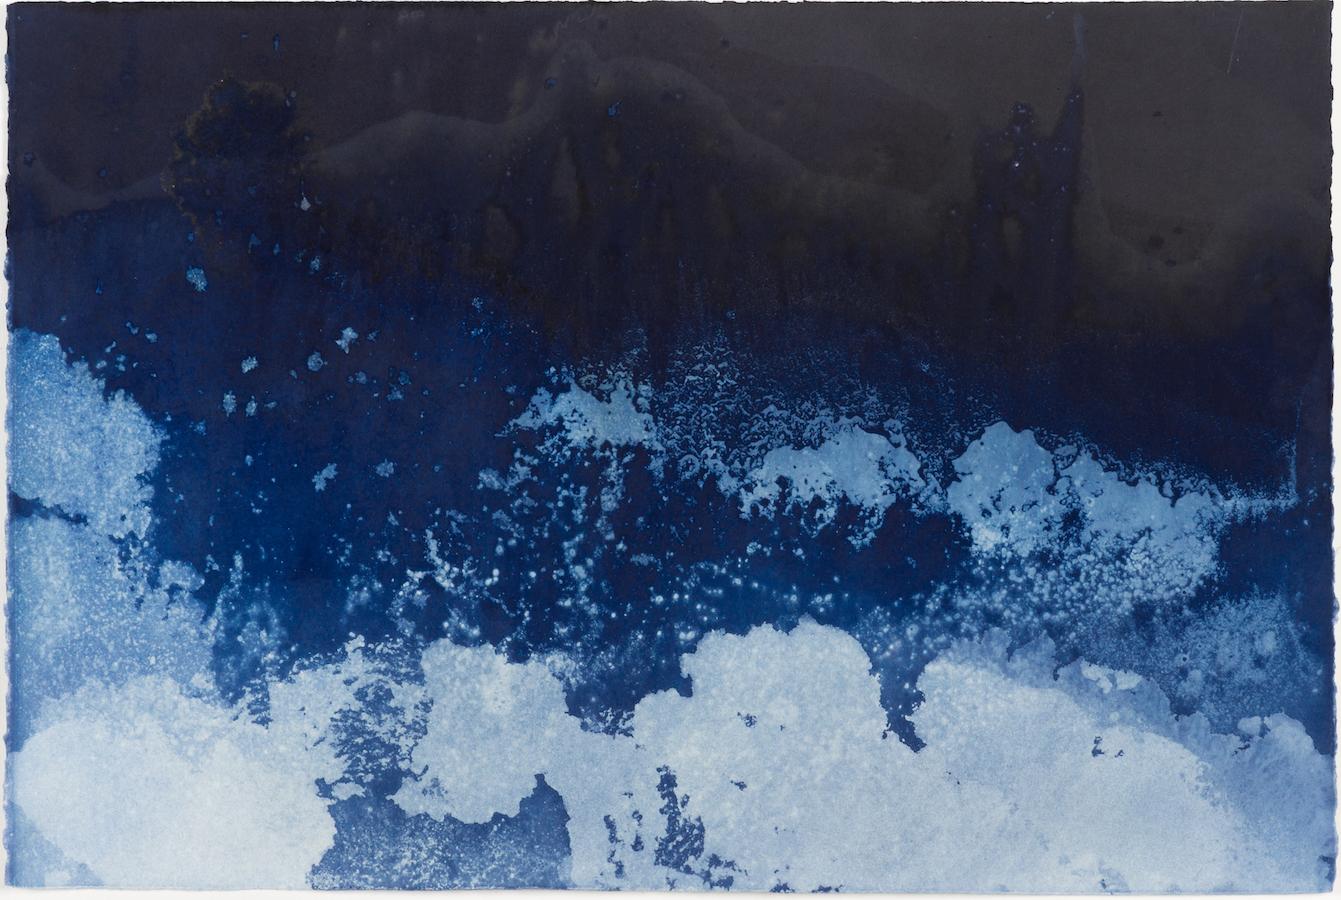 Landscape Photograph Paola Davila - 28° 50' 27.1314" N 111° 58' 3.4674" W-9  Photographie cyanotype des vagues de l'océan